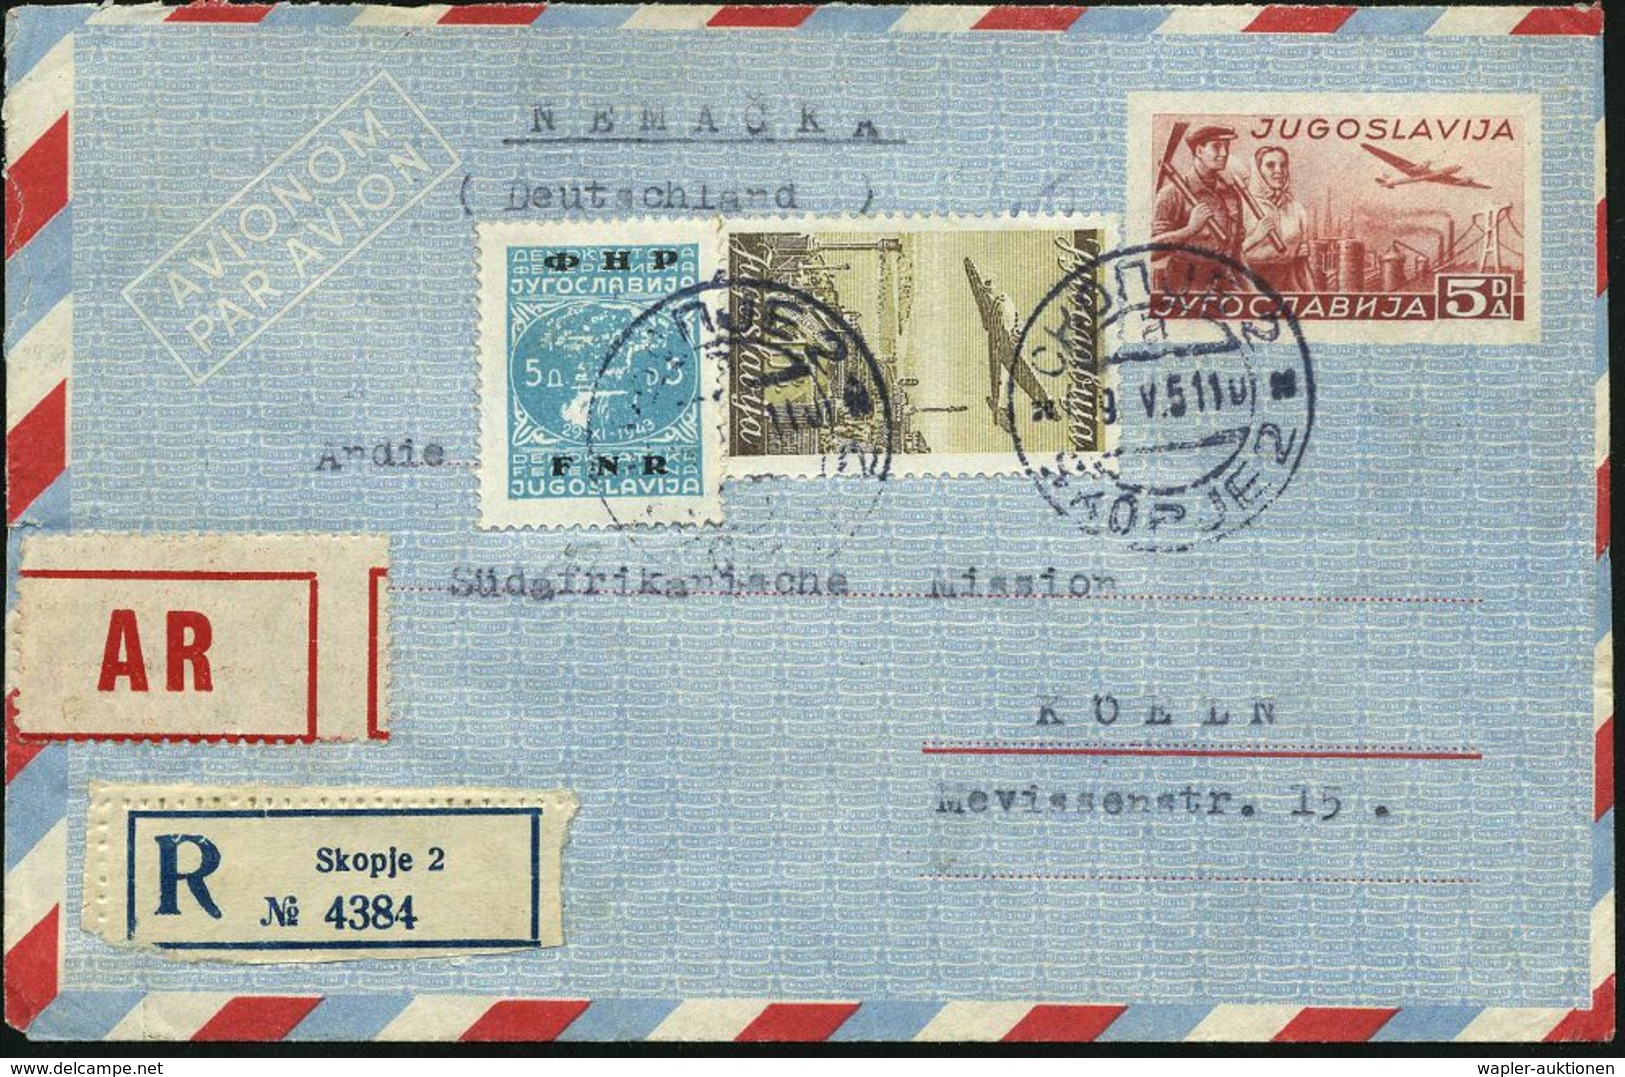 JUGOSLAWIEN 1951 Aerogramm 5 Din. Industrie, Rotbr., Zusatzfrankatur 10 Din.Flp. (Mi.519 U.a.) Bl. RZ: Skopje 2 + Roter  - Altri (Aria)